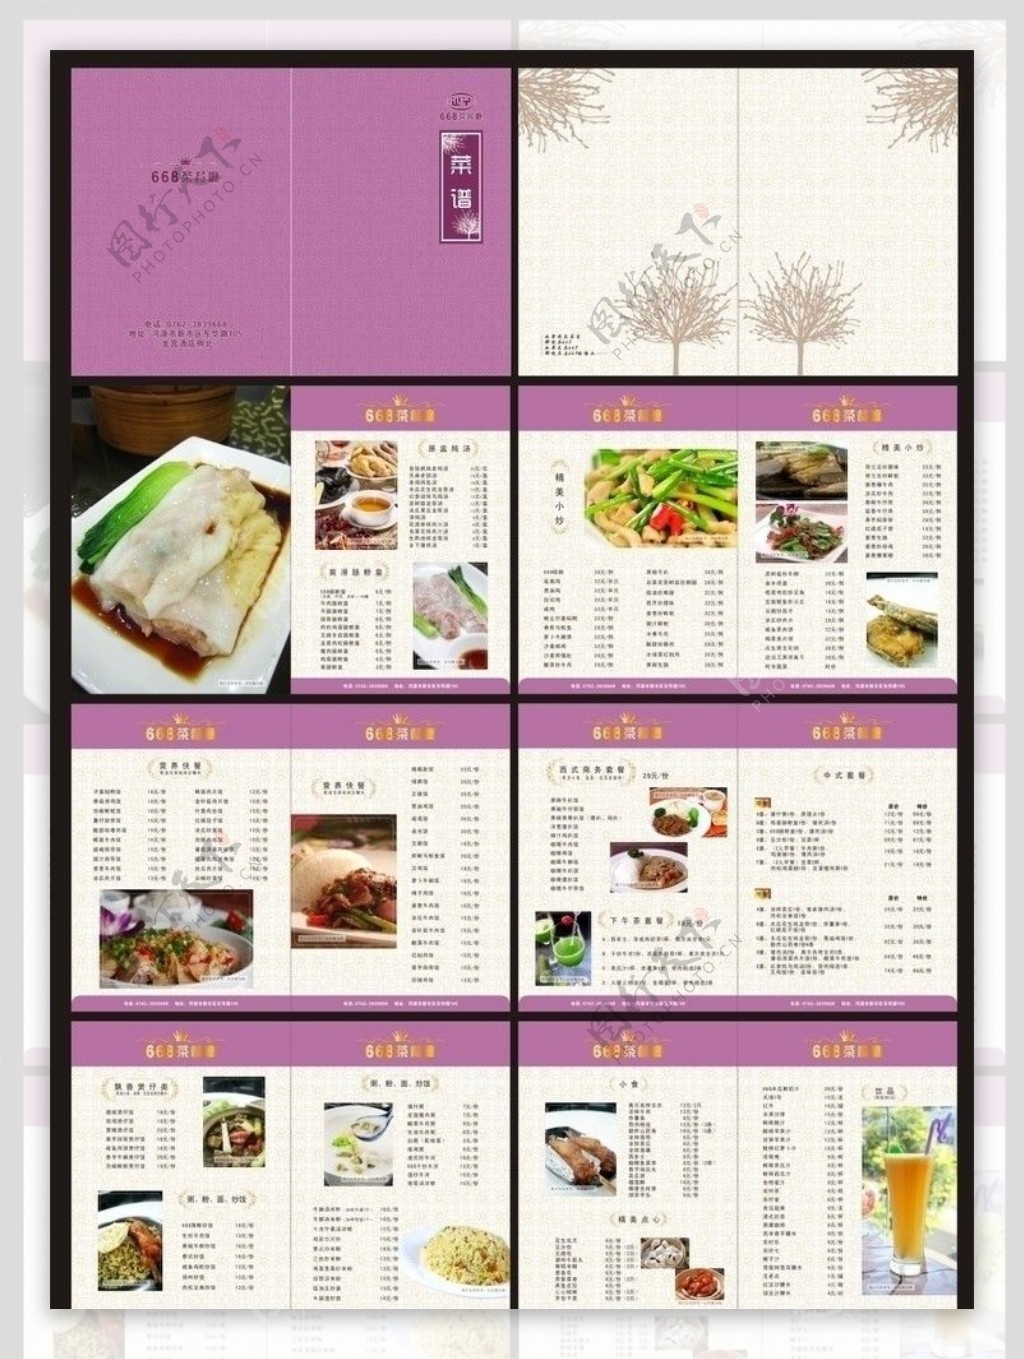 668西餐厅菜谱图片